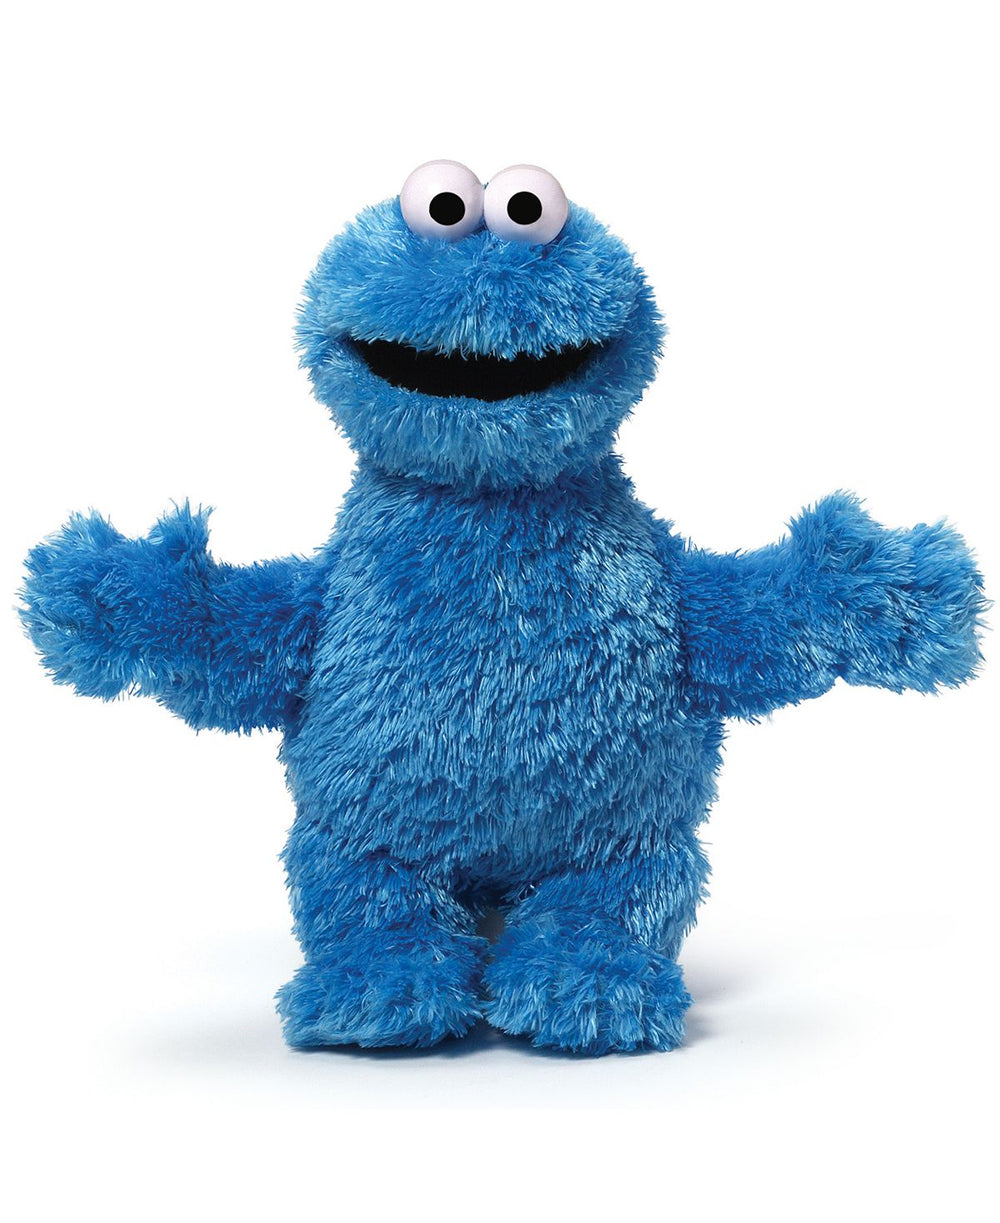 GUND Sesame Street 12 inch Cookie Monster Plush Toy